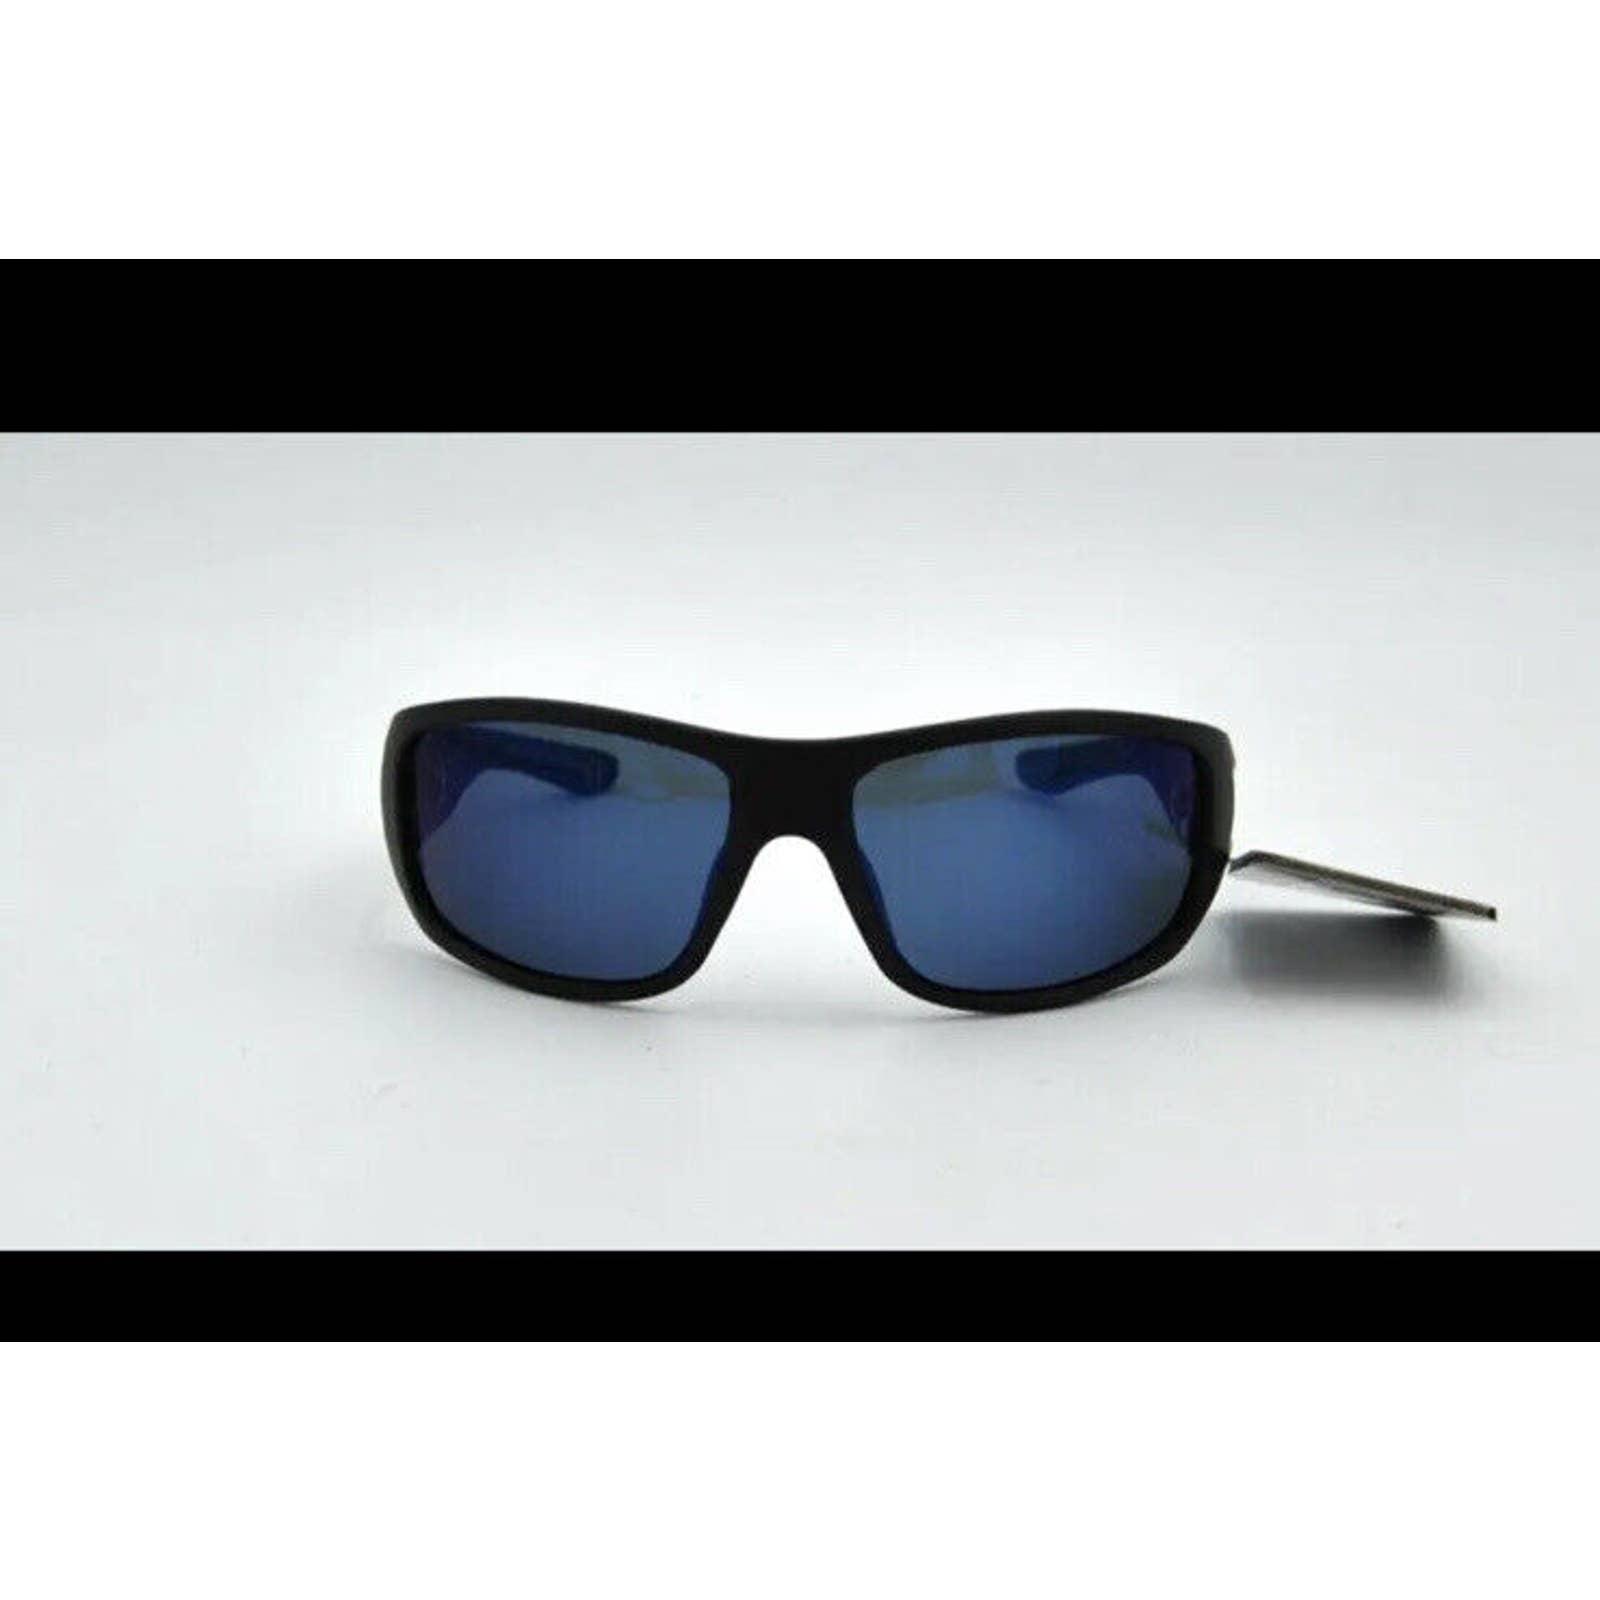 MEN Foster Grant Advance Comfort 14 960 POLARIZED sunglasses 100